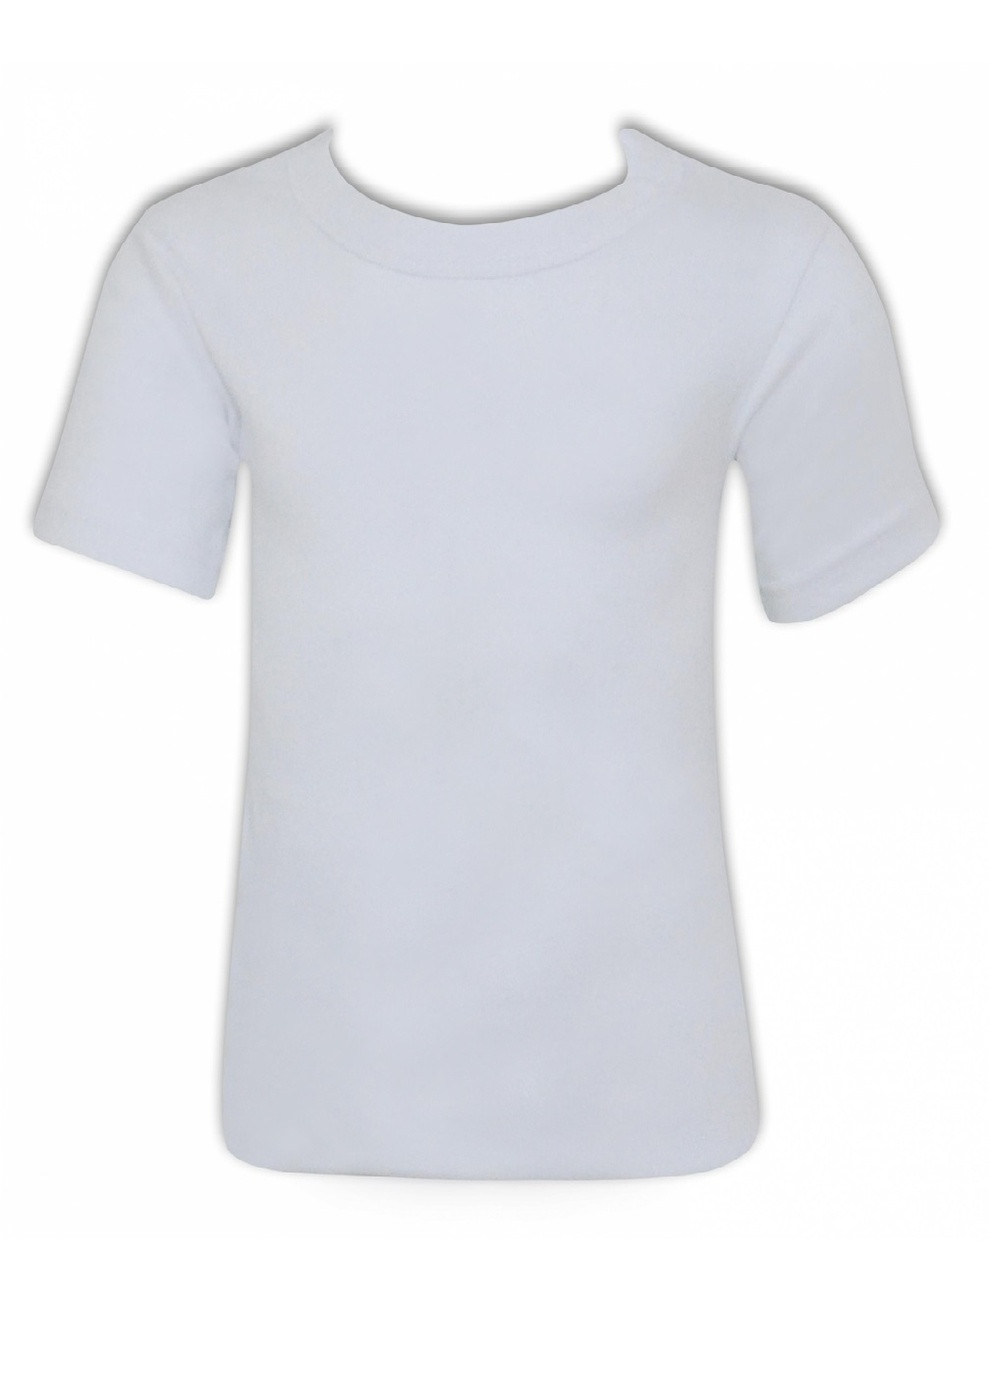 Белая демисезонная набор футболок для мальчика Katamino K12820